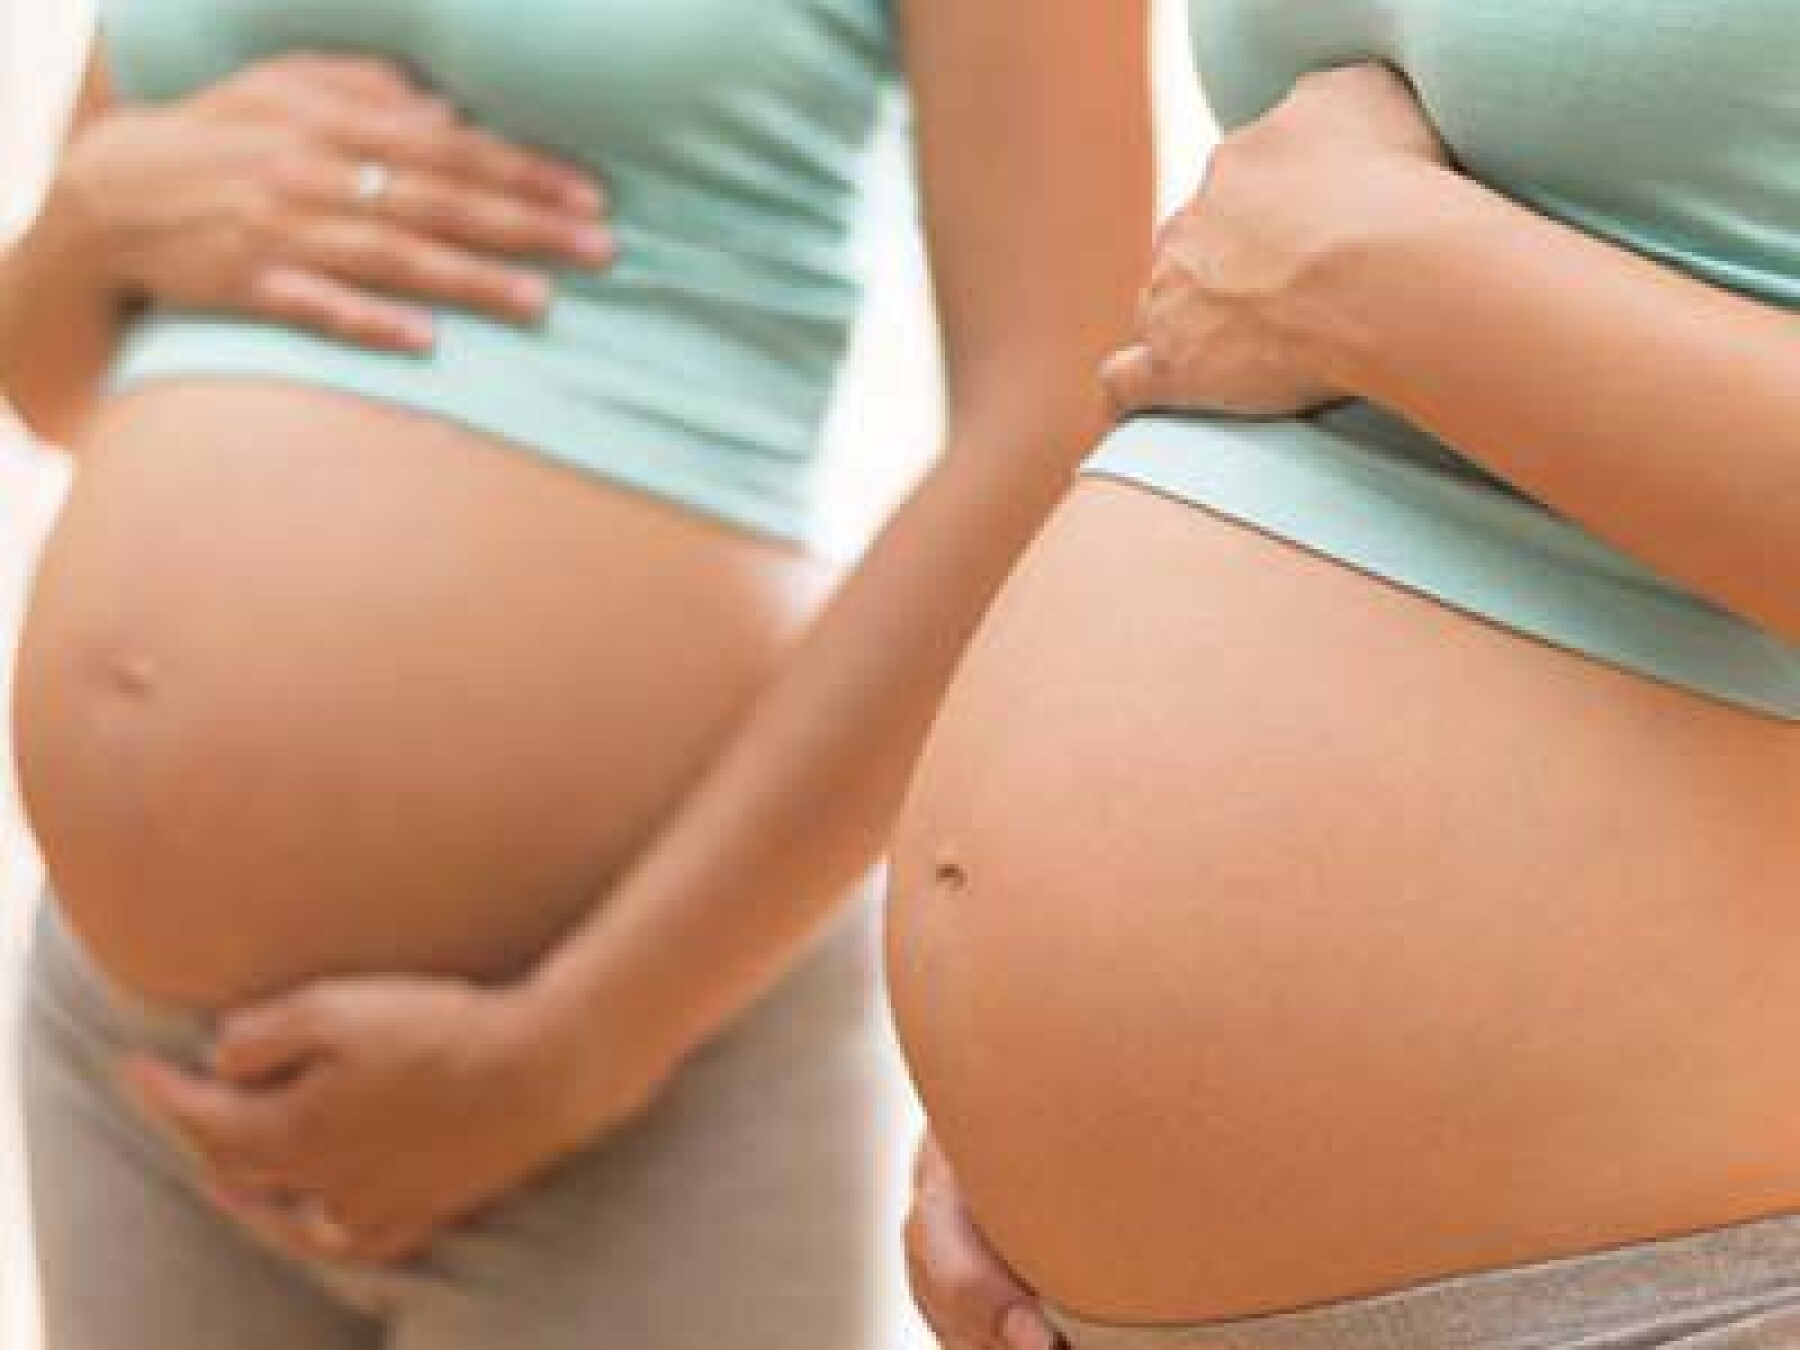 Crises d'angoisse enceinte, que faire ?